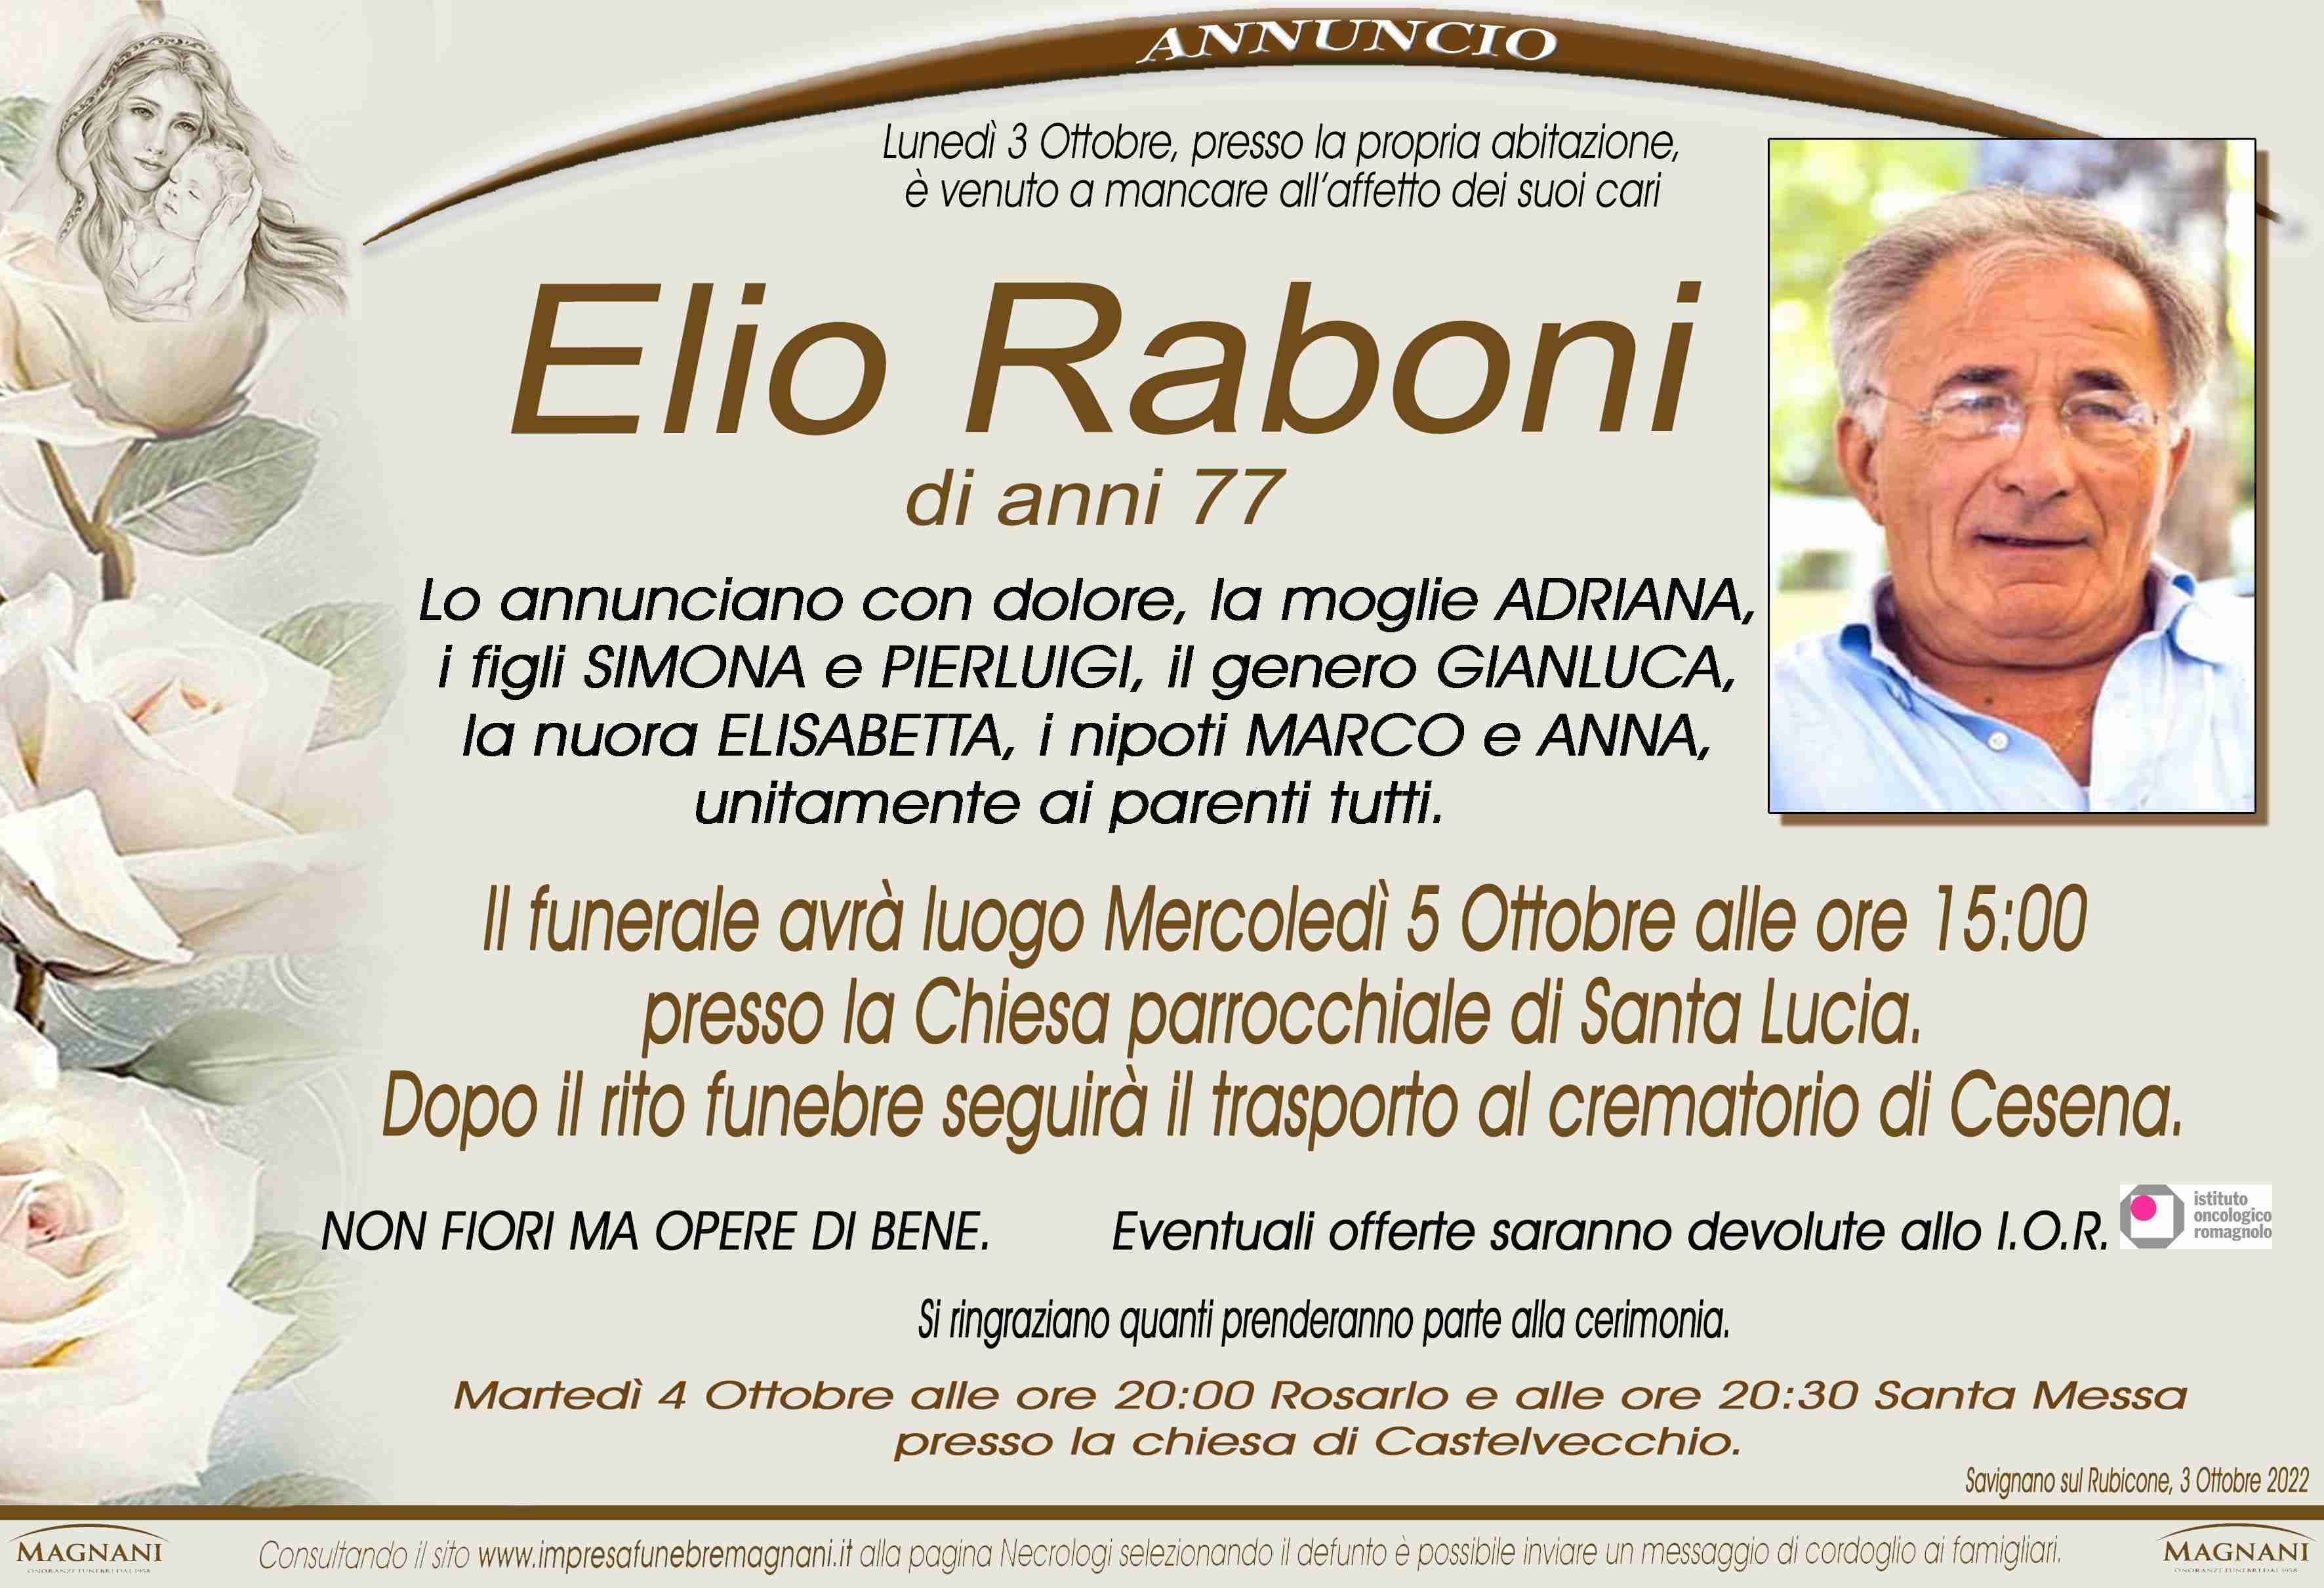 Elio Raboni